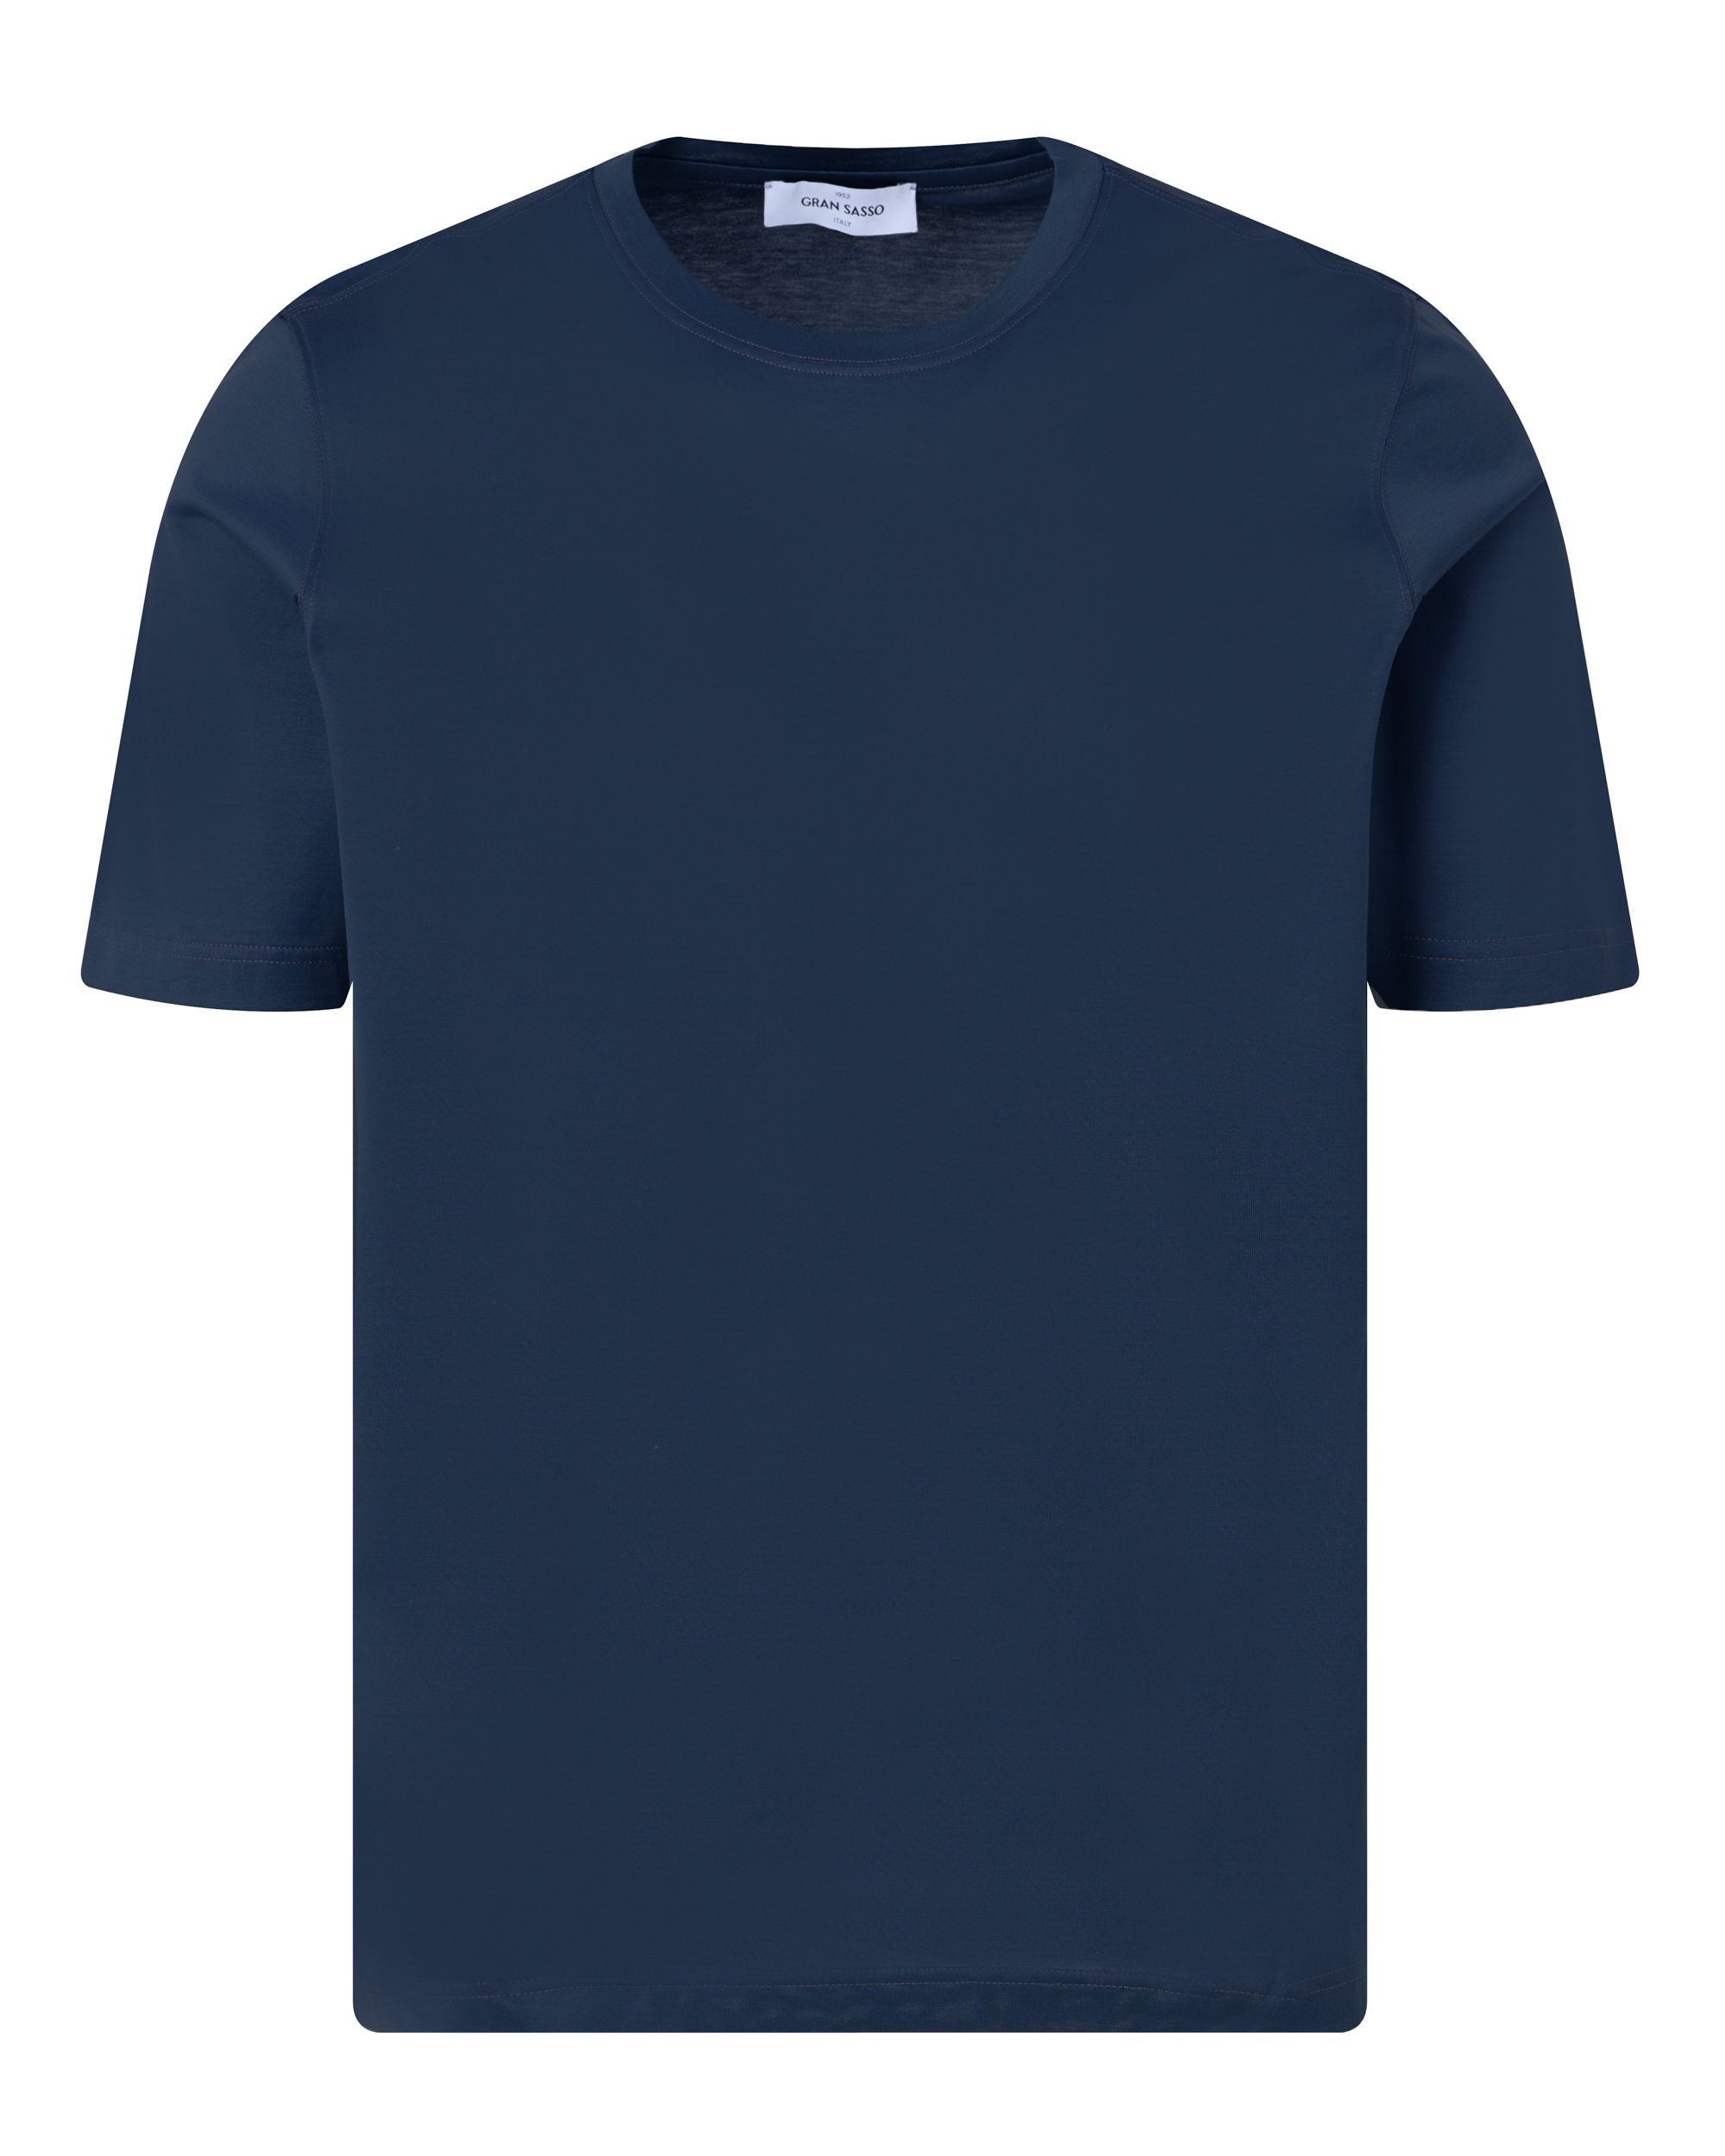 Gran Sasso T-shirt KM Donker blauw 091805-001-48